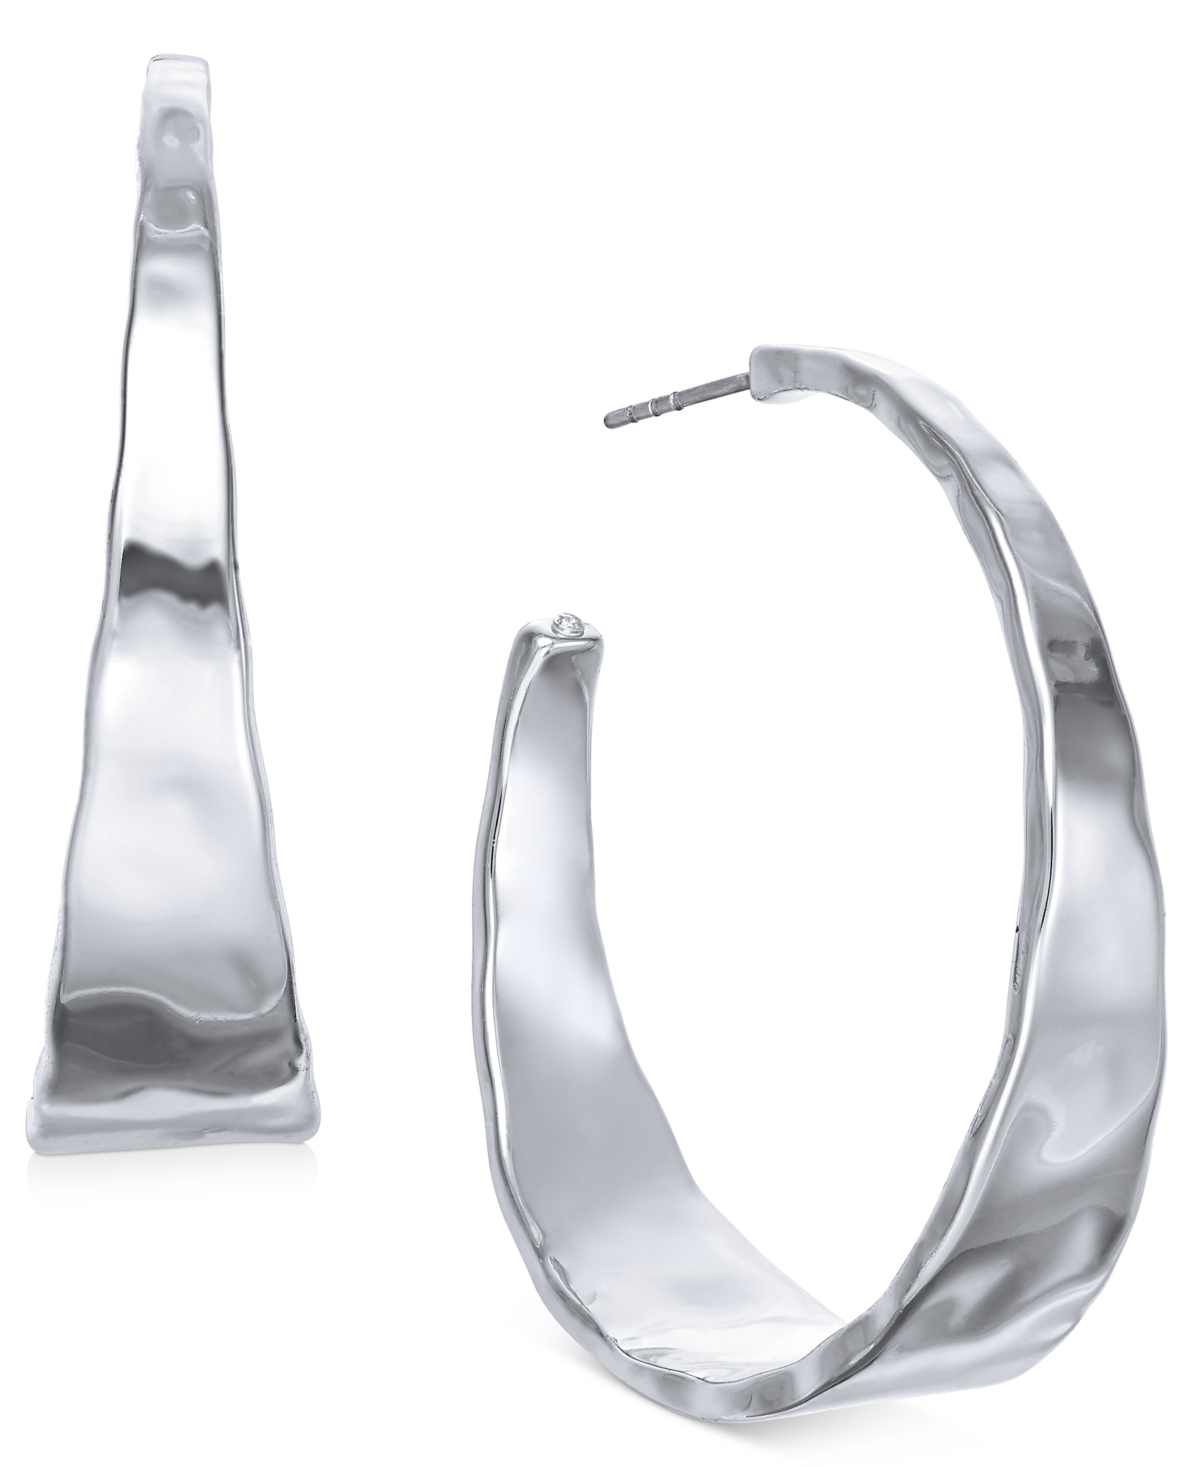 Hammered Metal Medium Hoop Earrings 1-.5", Created for Macy's - Silver